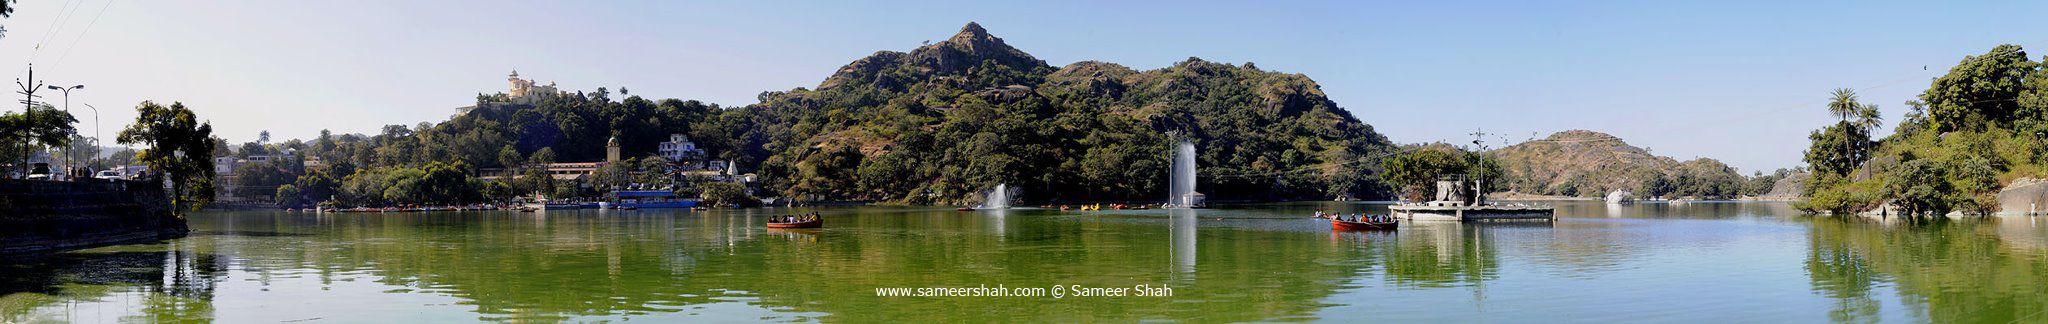 www.sameershah.com © Sameer Shah